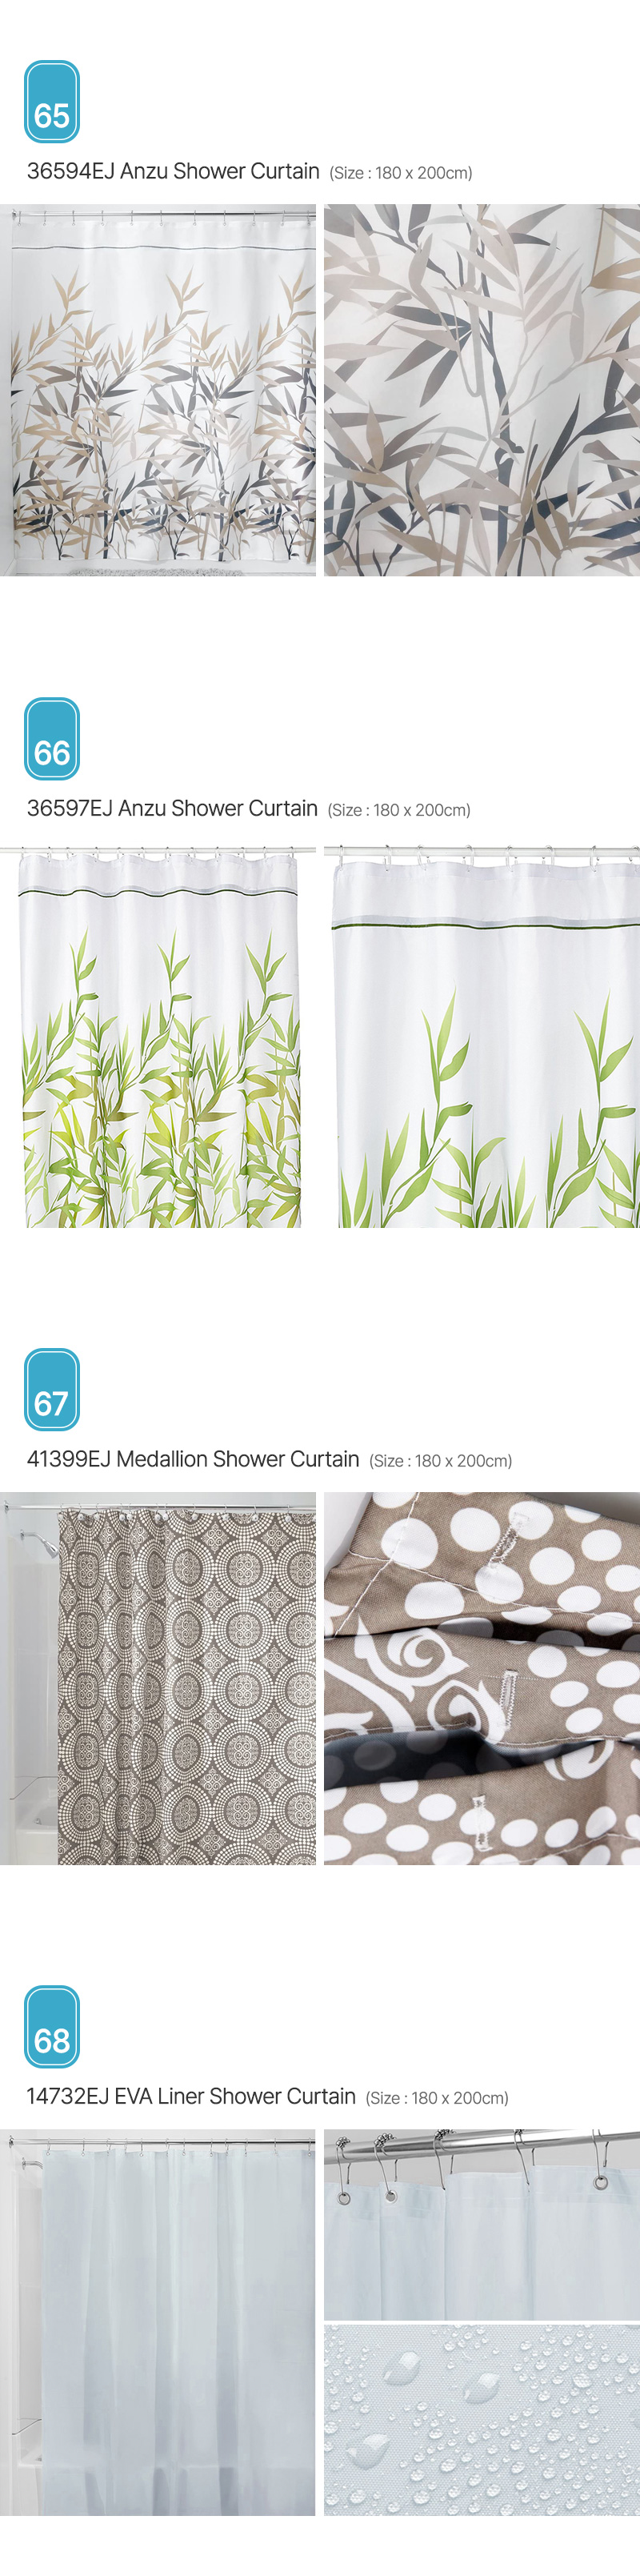 Aria_Shower-Curtain_17.jpg